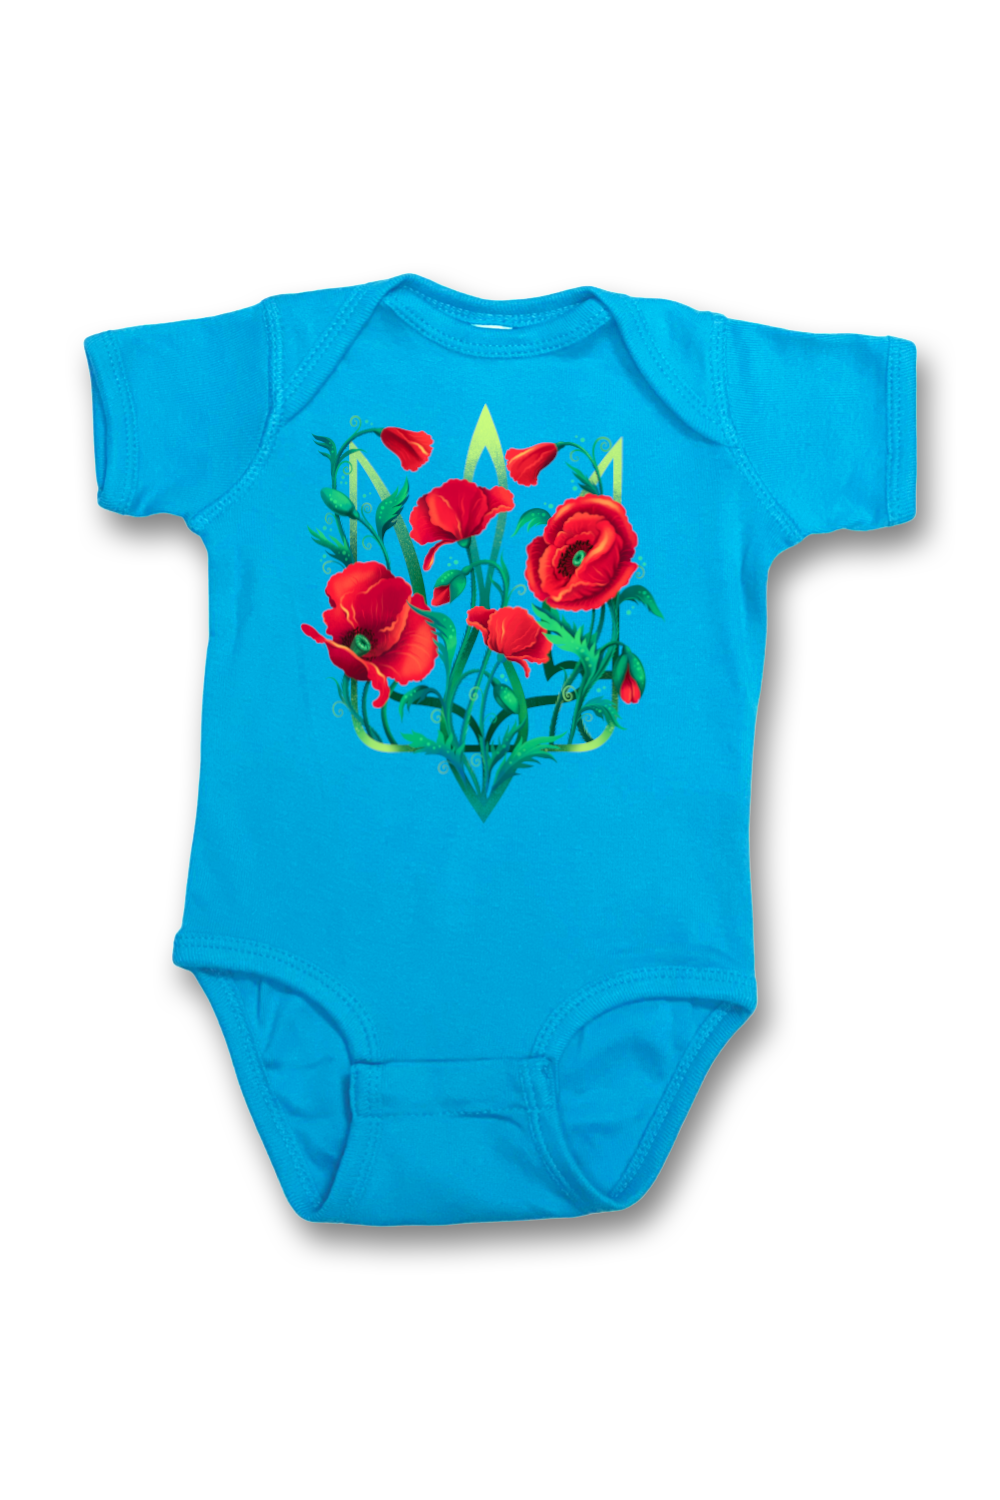 Infant onesie bodysuit "Poppy Tryzub"